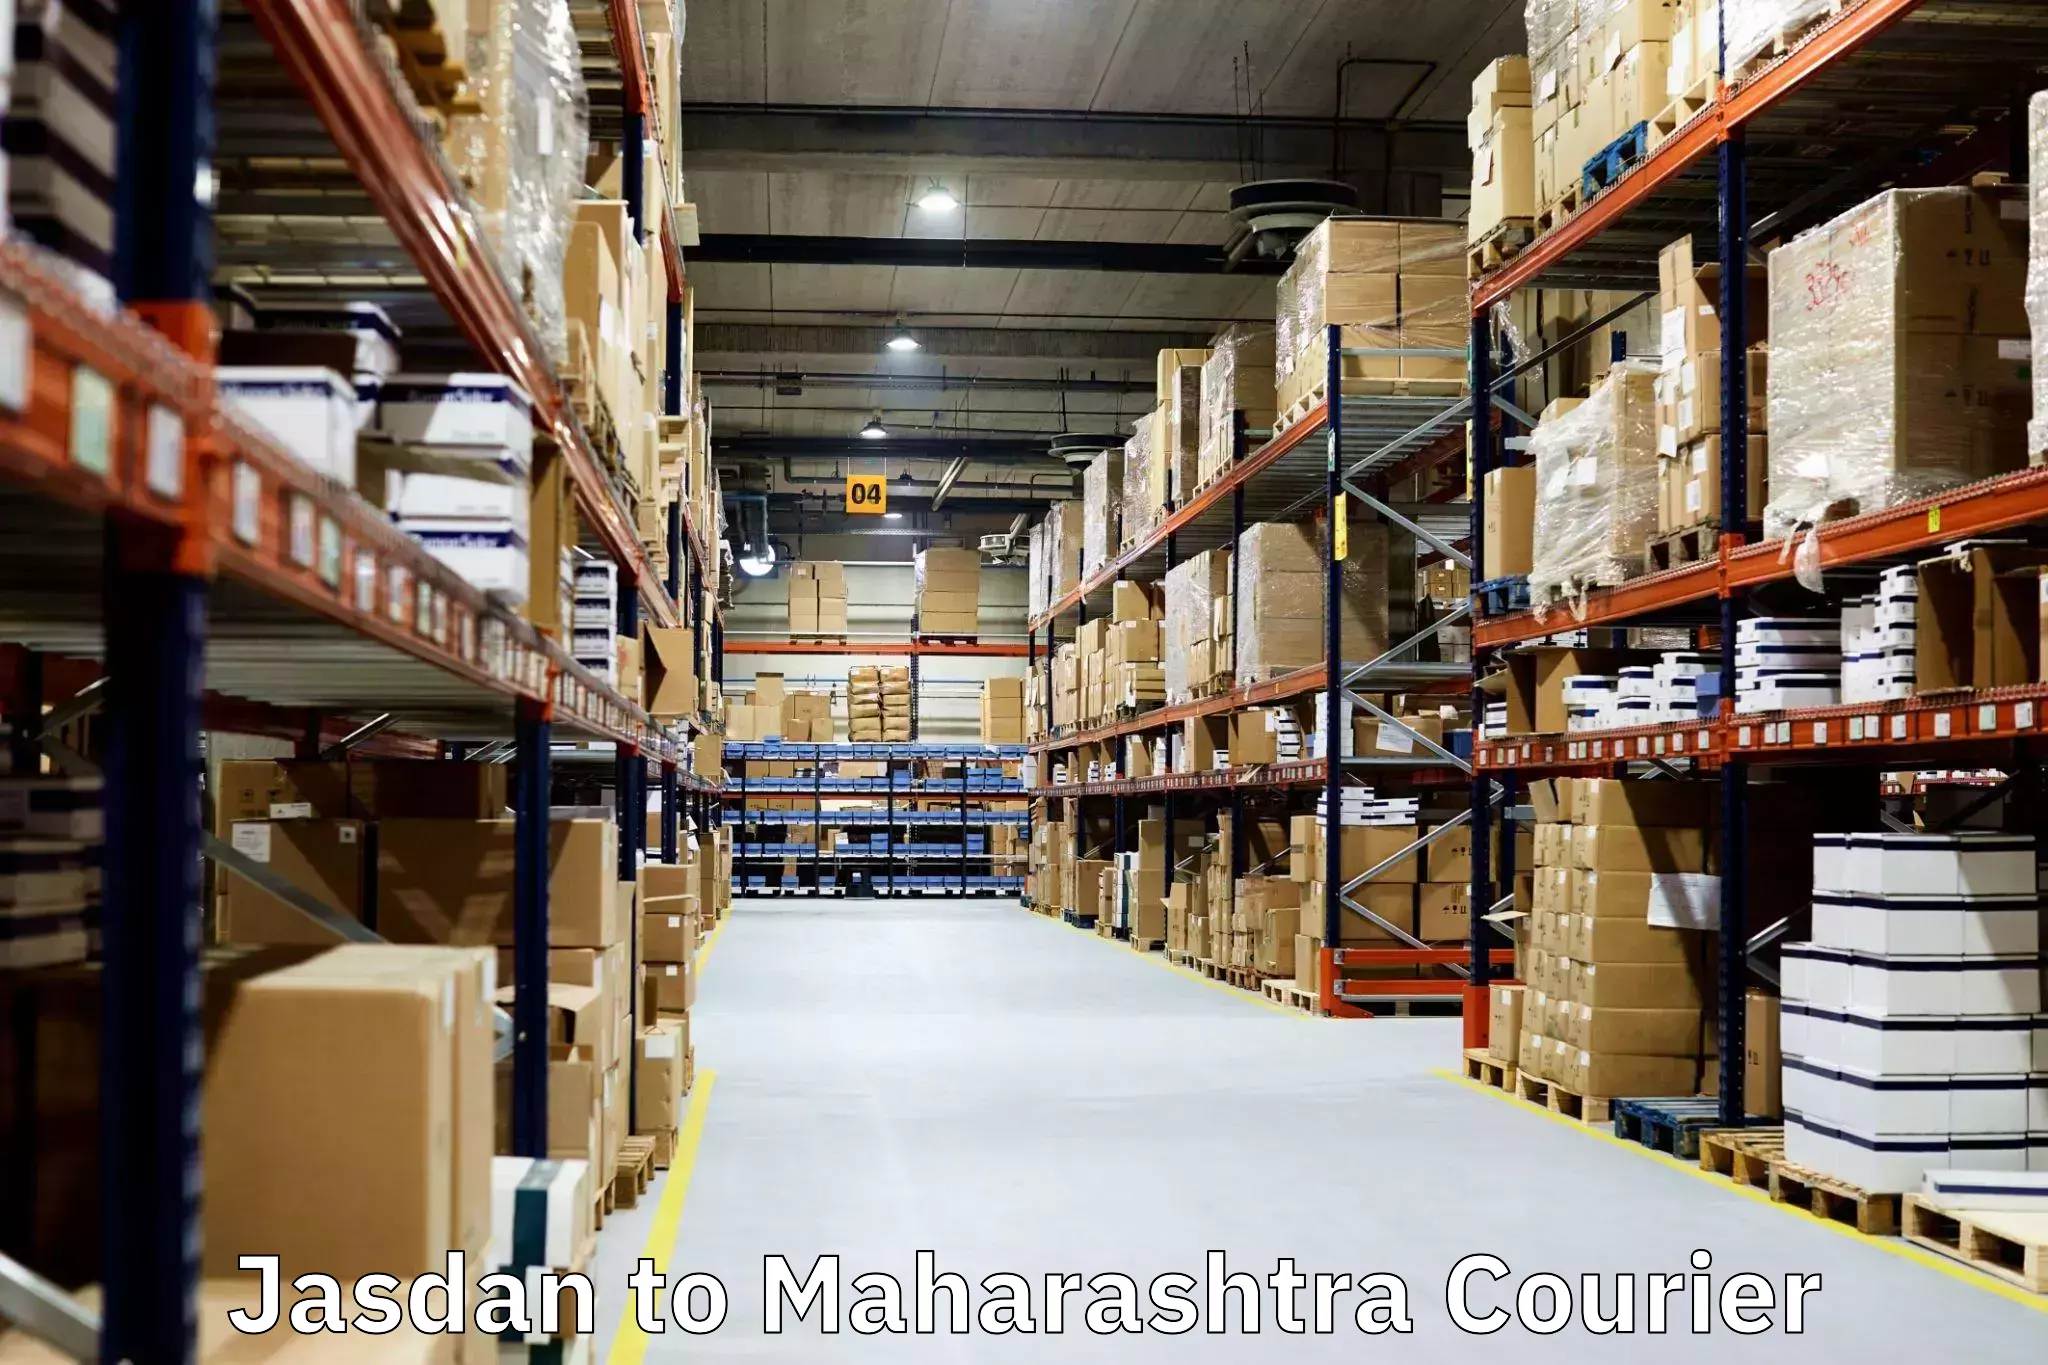 Trusted moving company Jasdan to Maharashtra